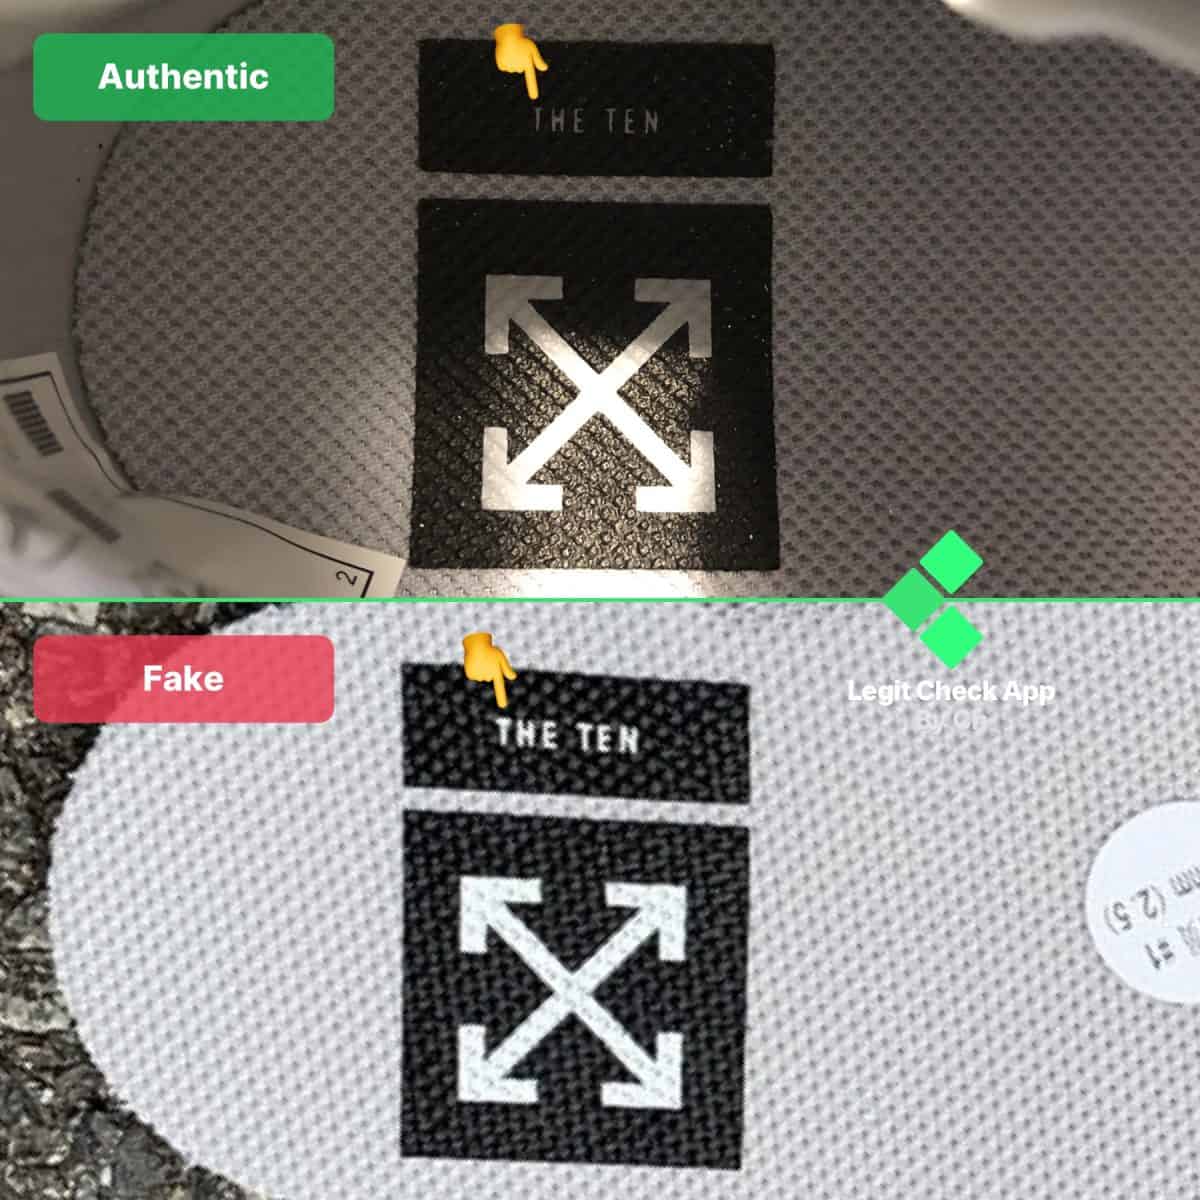 fake vs real off-white air max 97 menta